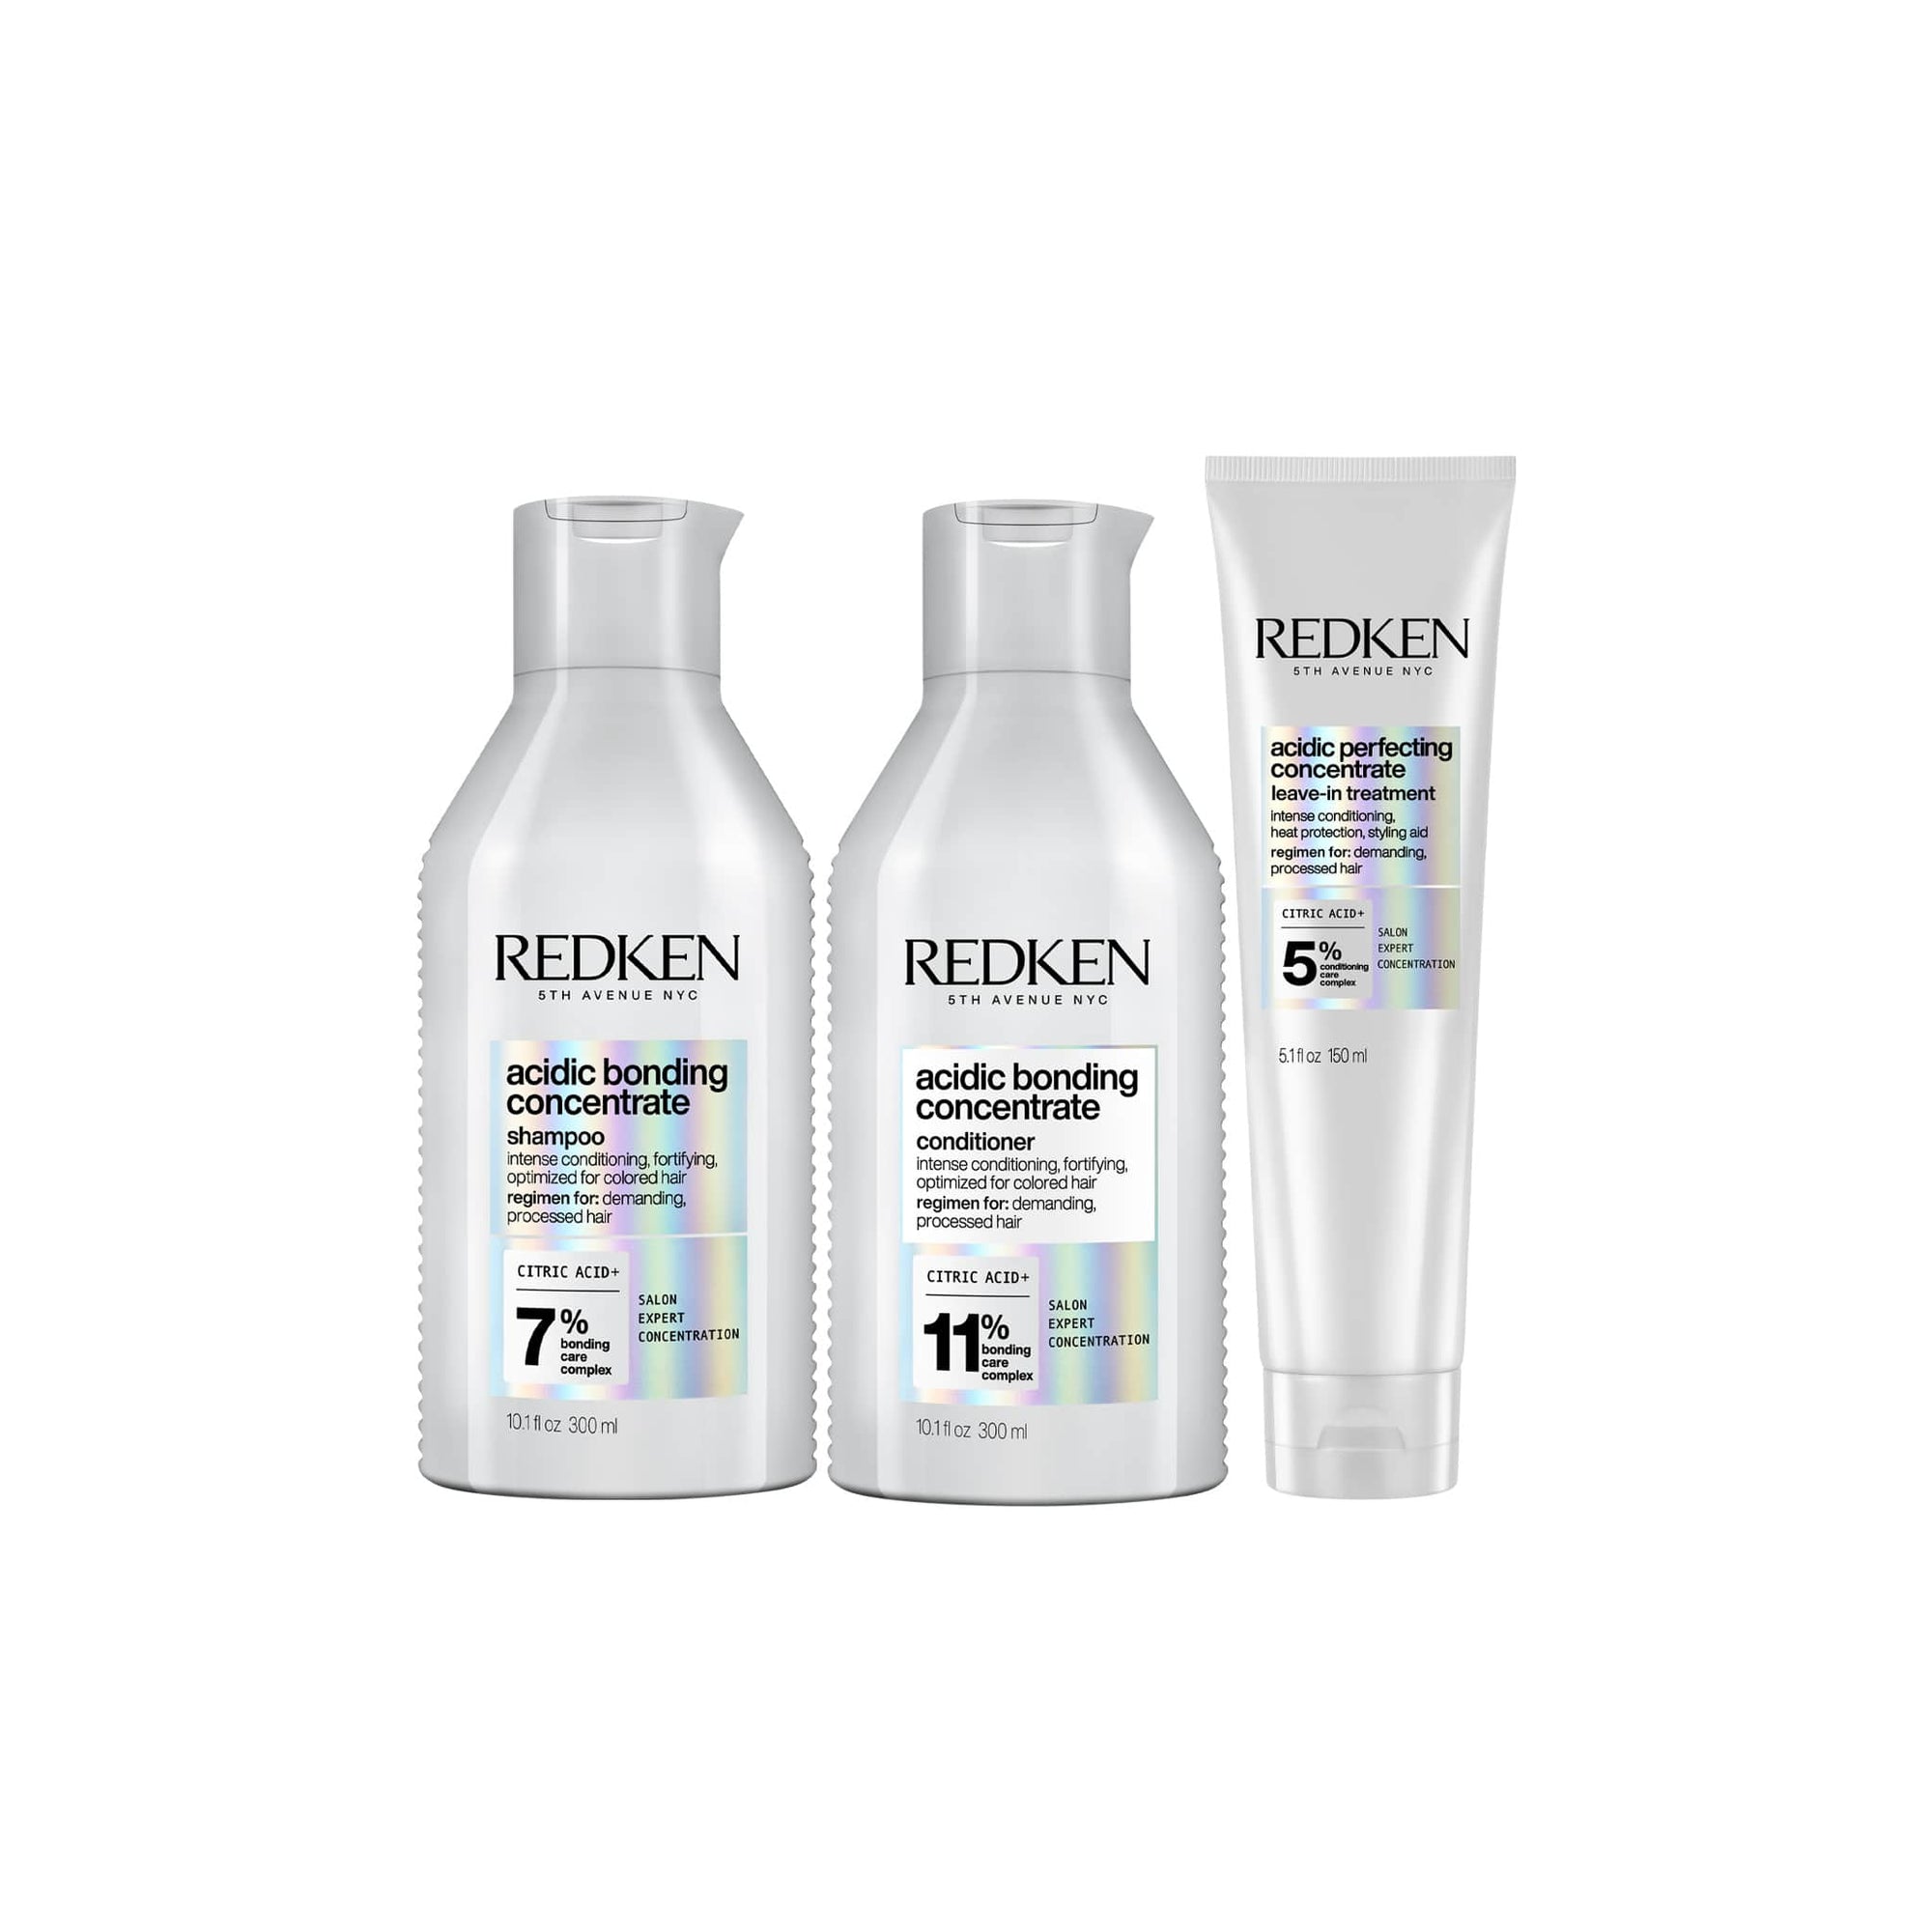 Redken Acidic Bonding Gift Set - Shop Online | Retail Box